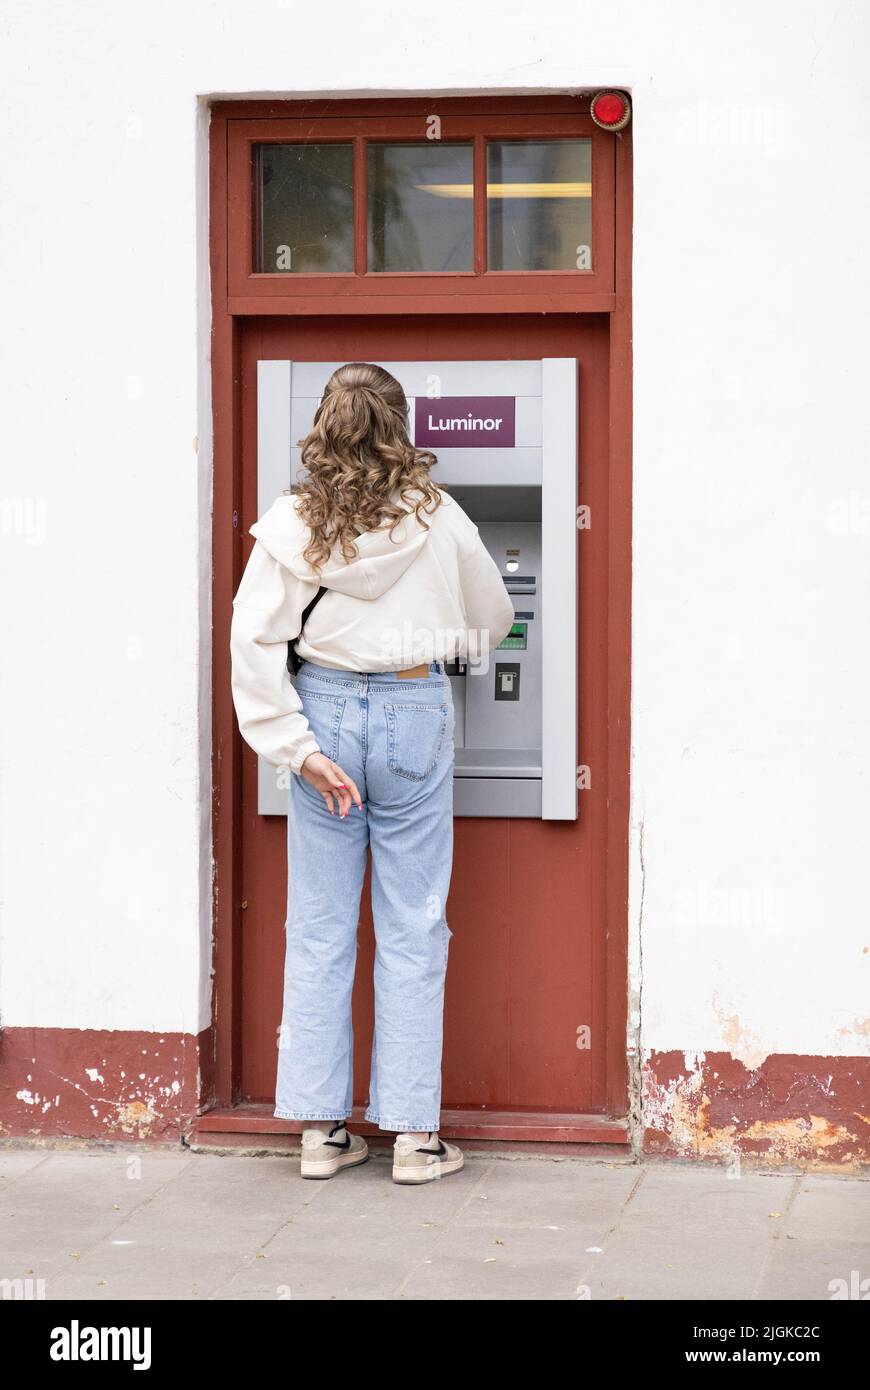 Estonia Bank - Rückansicht einer Frau, die an einem Geldautomaten der Luminor Bank, Kuressaare, Estland, den baltischen Staaten, Europa, Bargeld erhält Stockfoto